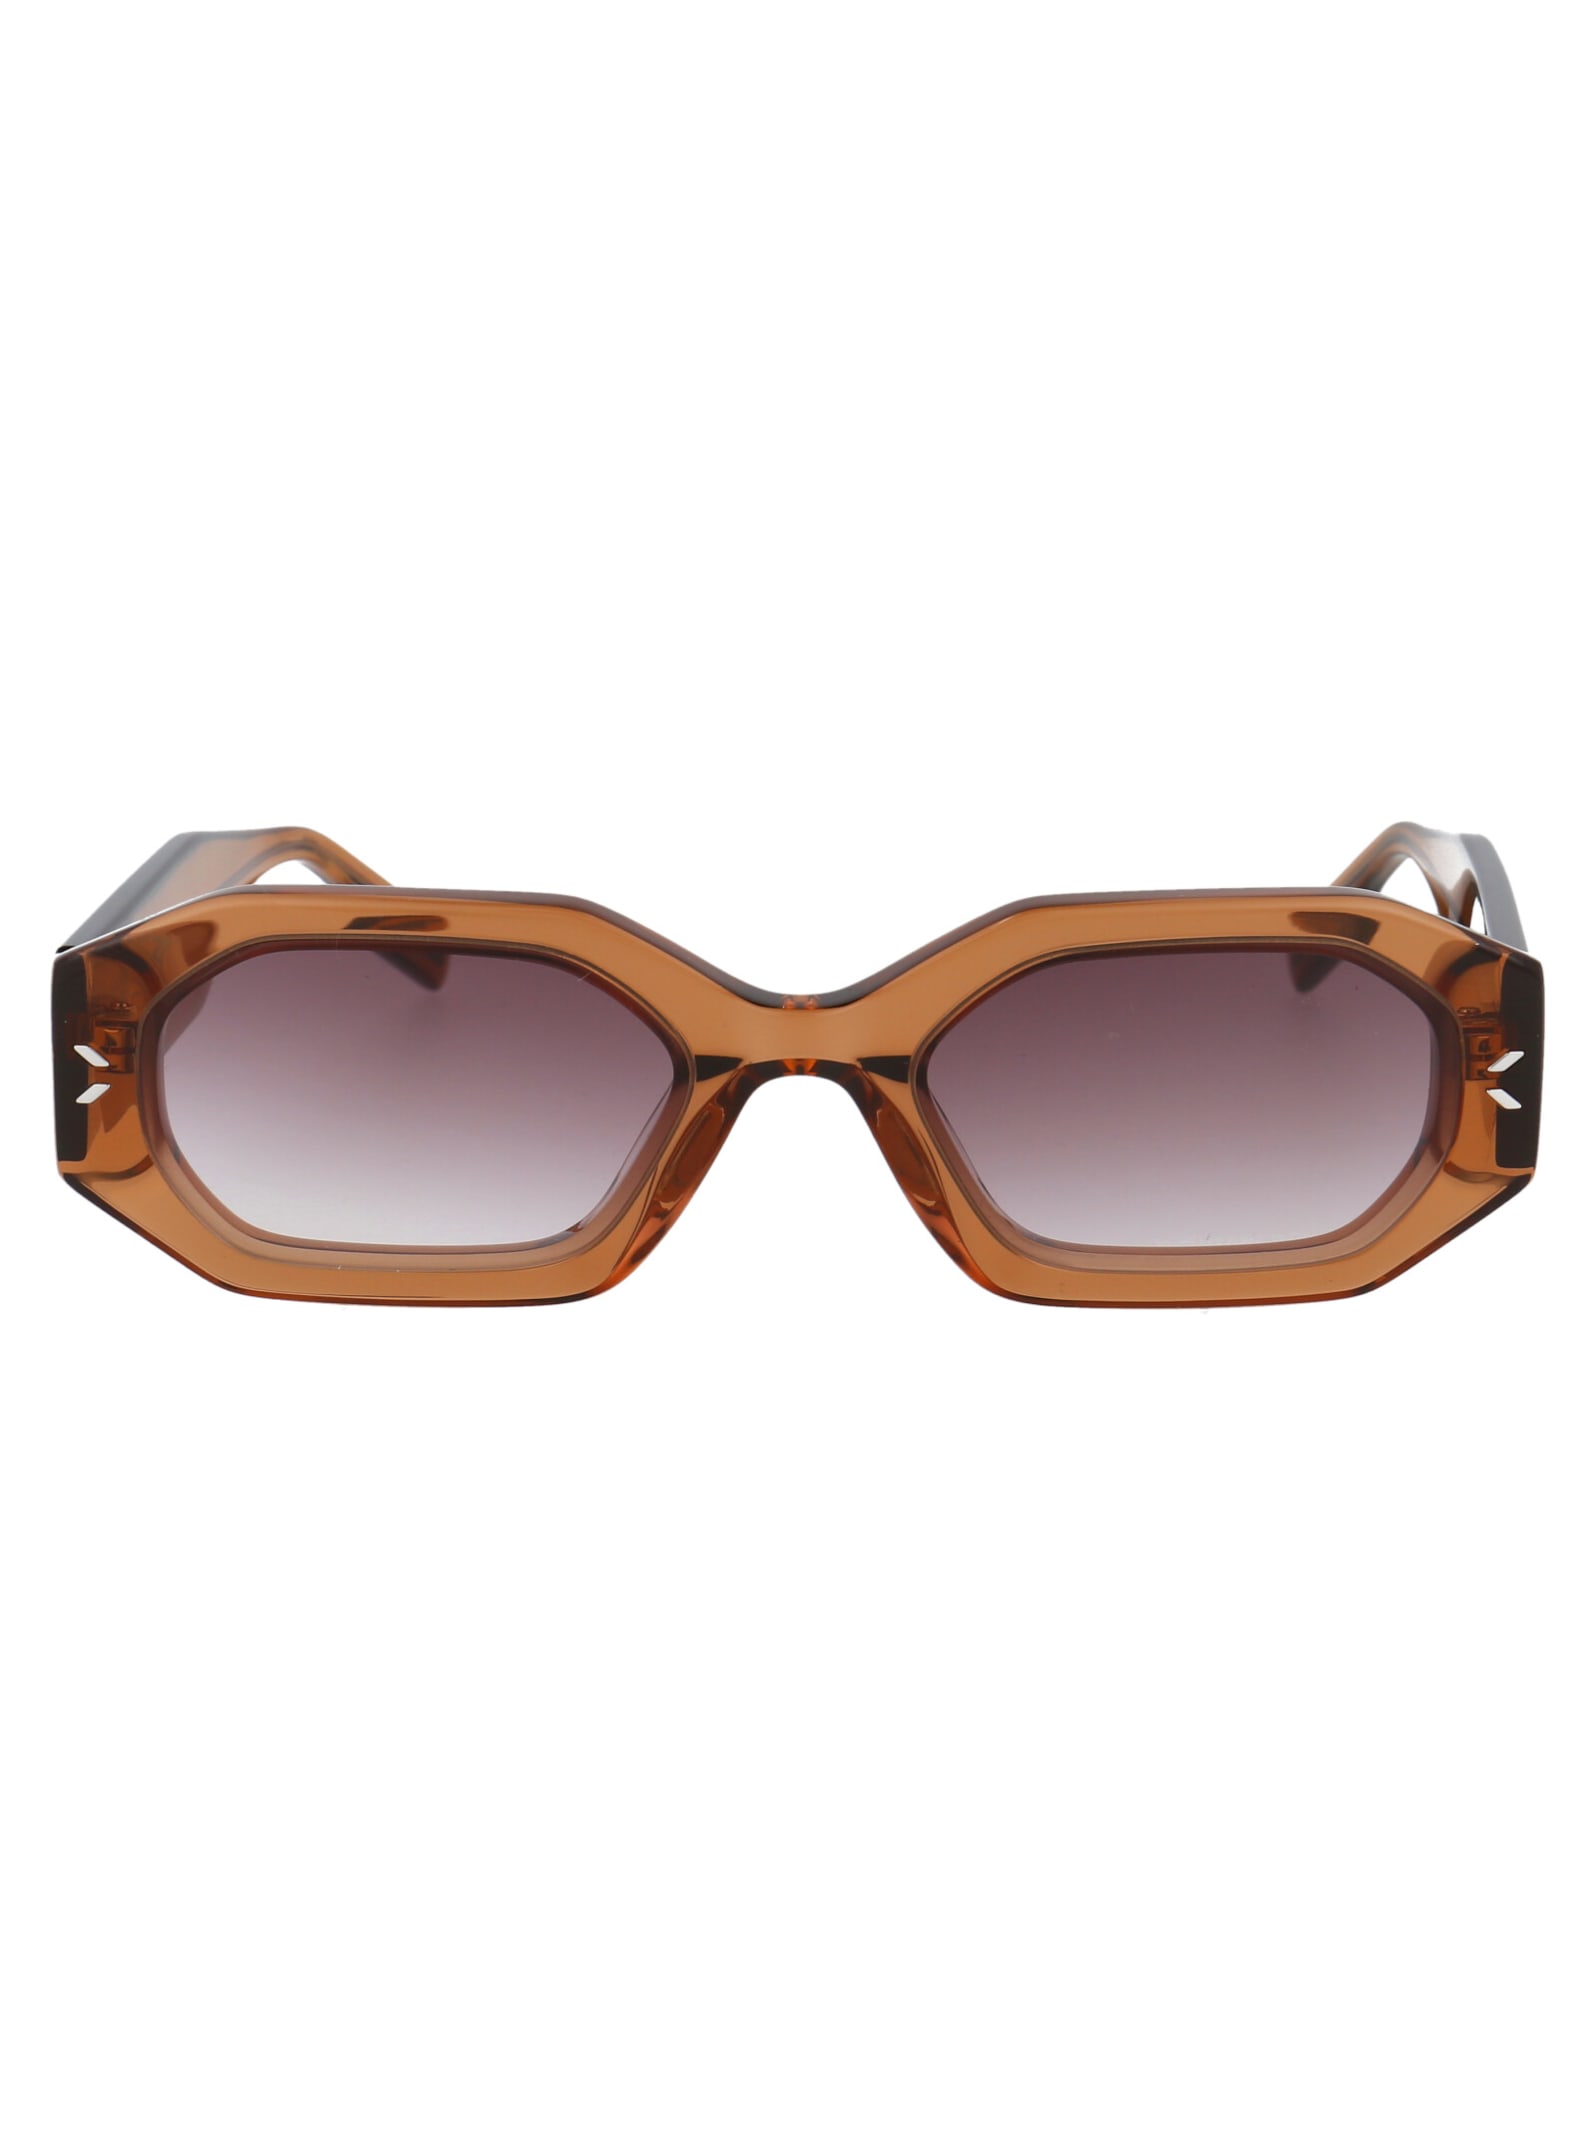 McQ Alexander McQueen Mq0340s Sunglasses